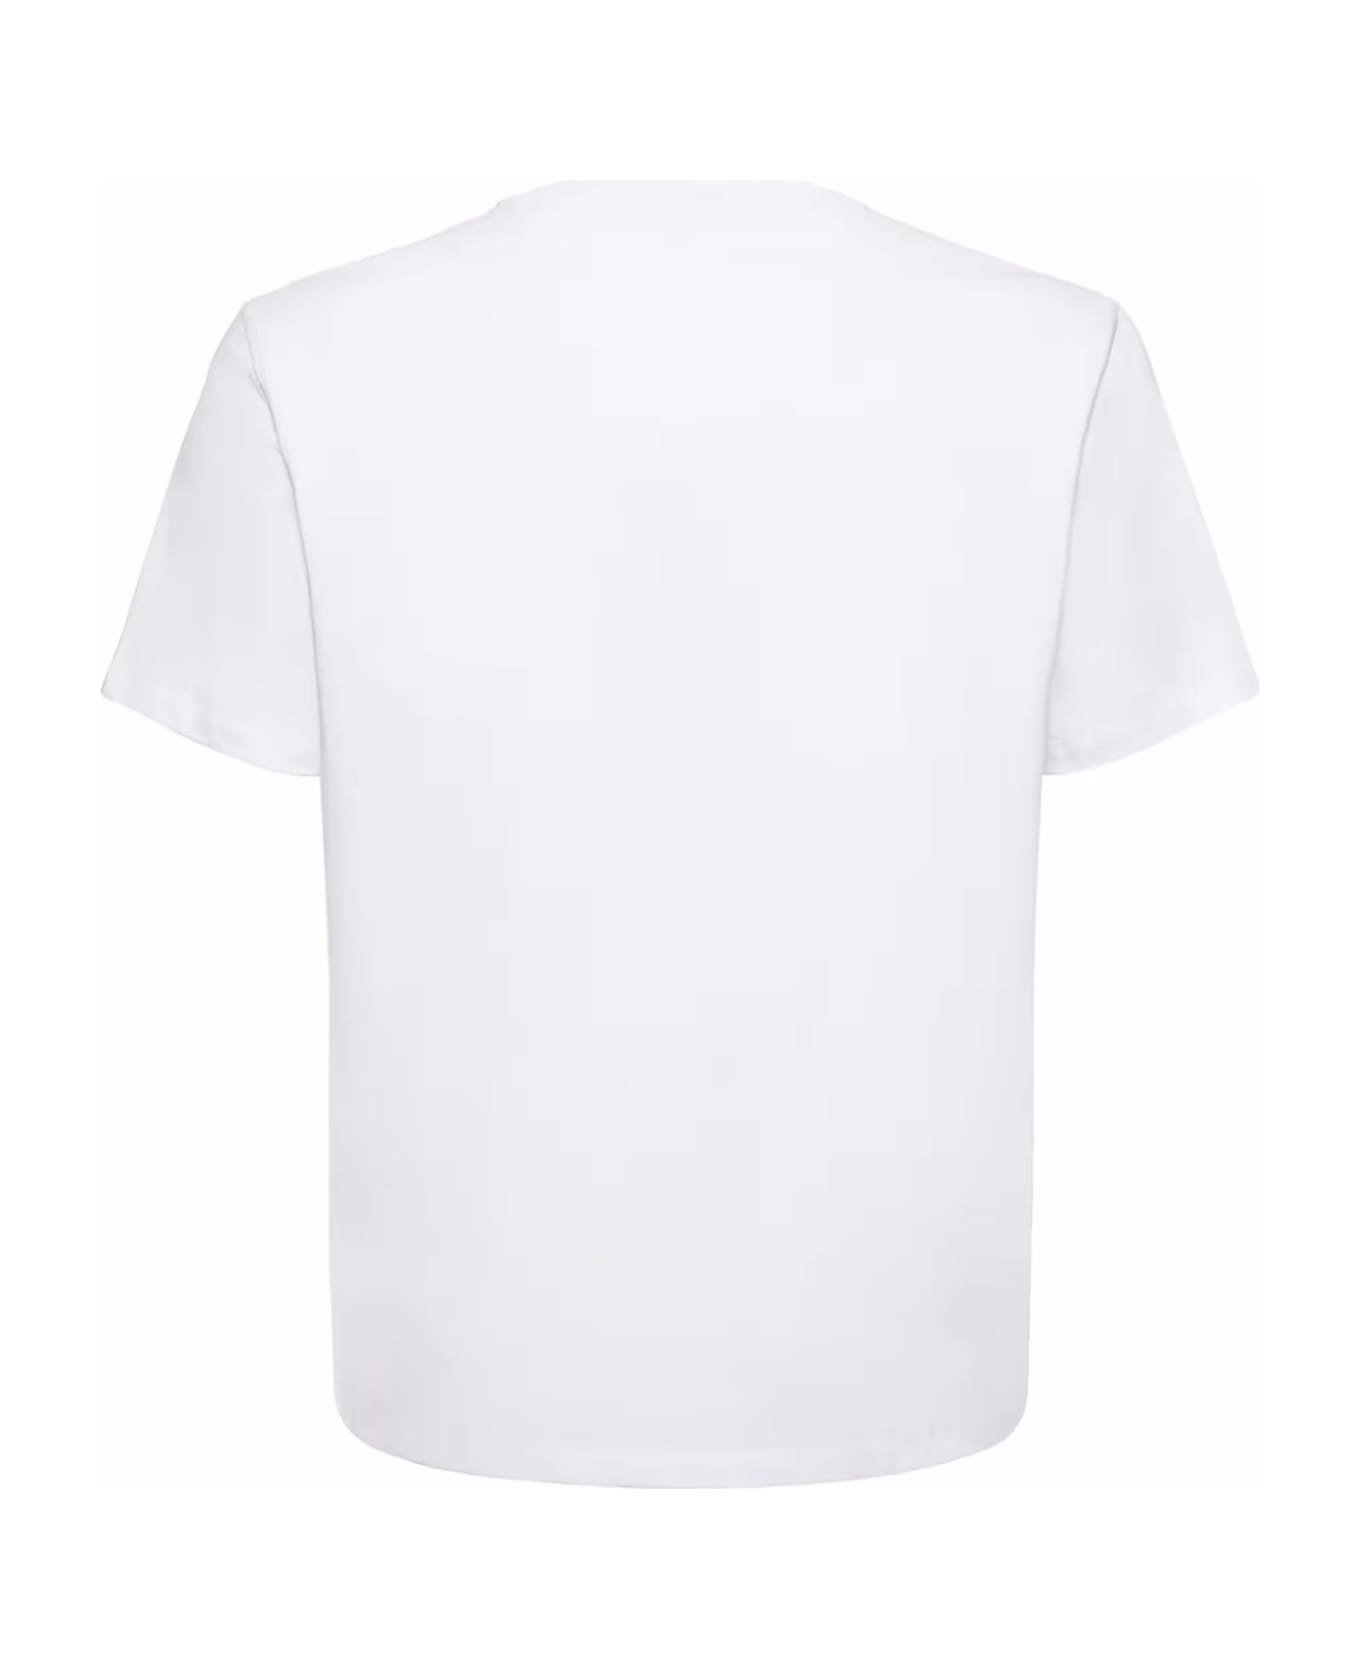 Ami Alexandre Mattiussi White Cotton T-shirt - Bianco